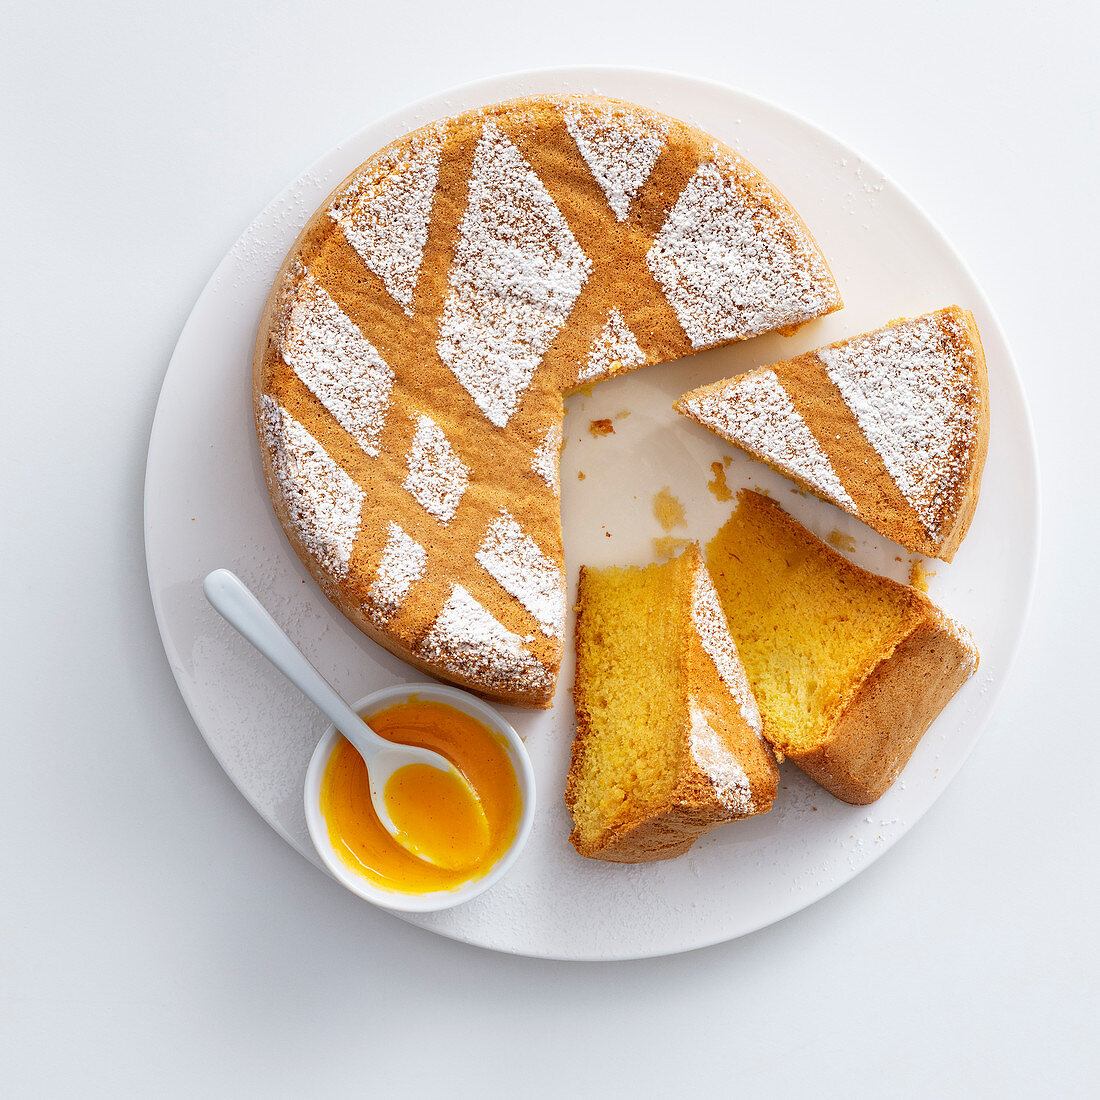 Prosecco lemon cake